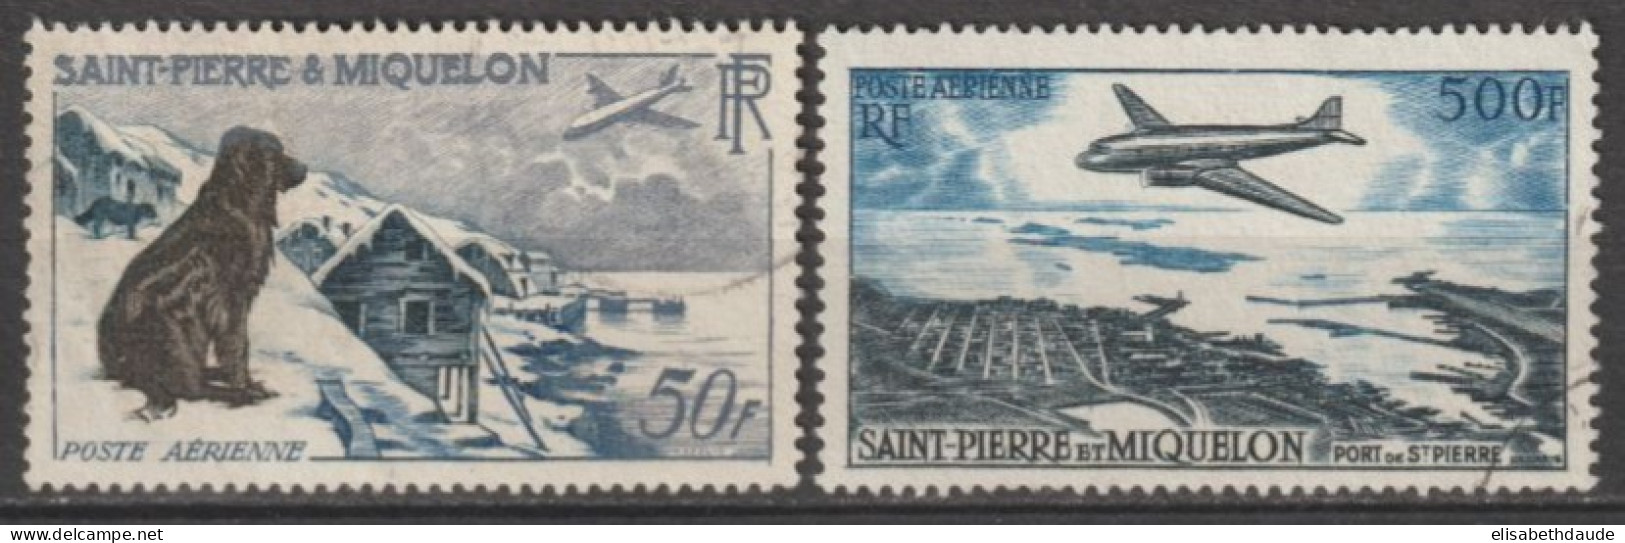 SPM - 1956/57 - POSTE AERIENNE - YVERT N° 23/24 OBLITERES - COTE = 60 EUR. - Gebraucht